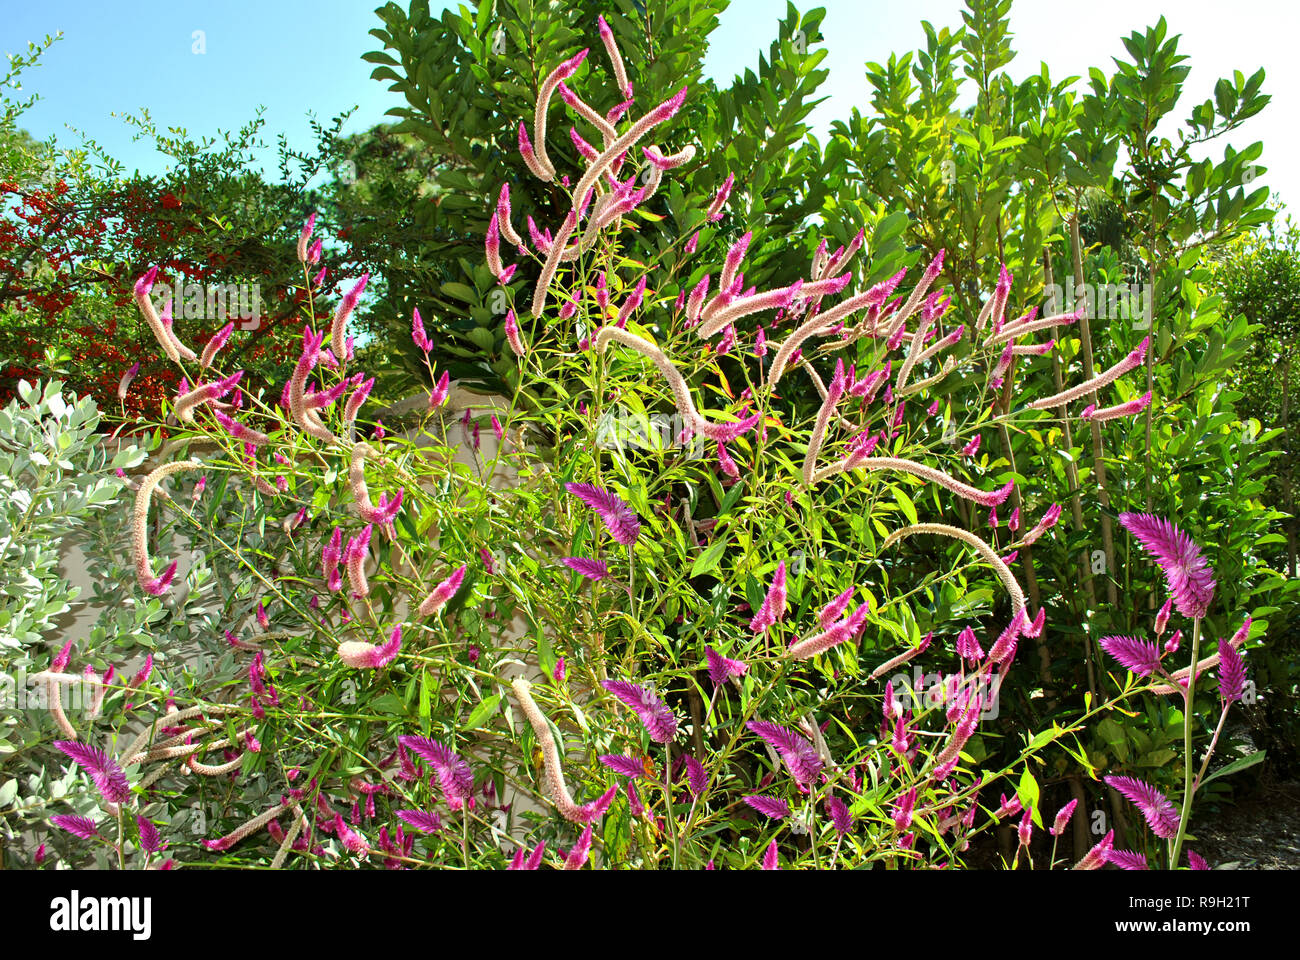 Quail Grass Latin name Celosia Argentea in Florida botanical gardens Stock Photo